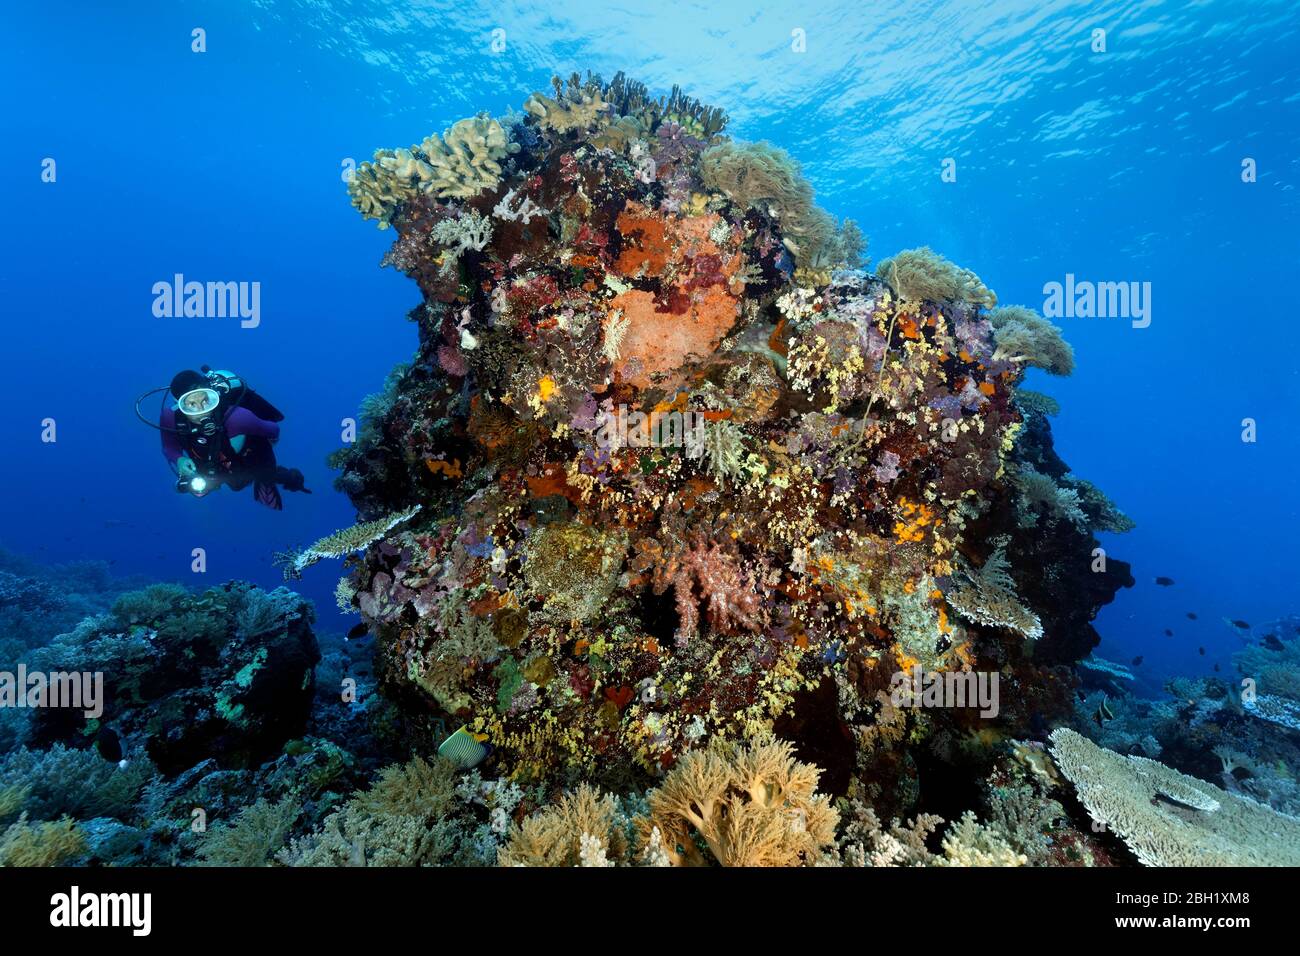 Diver Ansichten Unterwasserlandschaft, große dichte Korallenblöcke Pazifik, Sulu Sea, Tubbataha Reef National Marine Park, Palawan Provinz, Philippinen Stockfoto